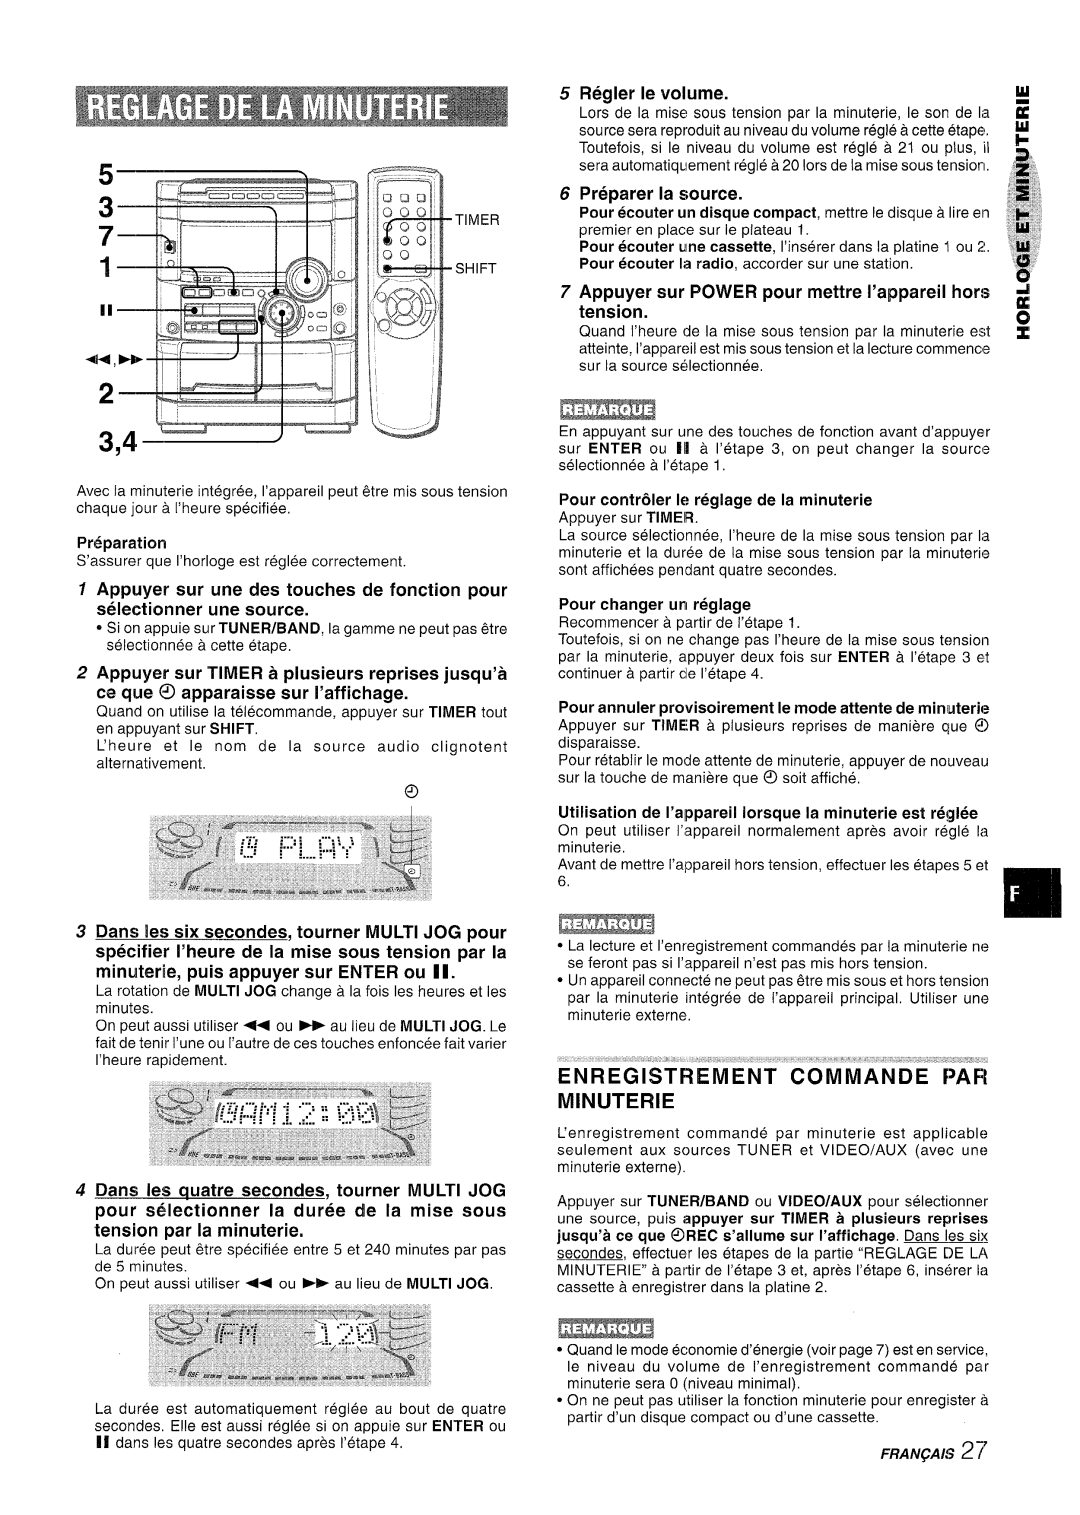 Sony NSX-A767 manual En Registrement Commande Par Minuterie, Regler Ie volume, Preparer la source 